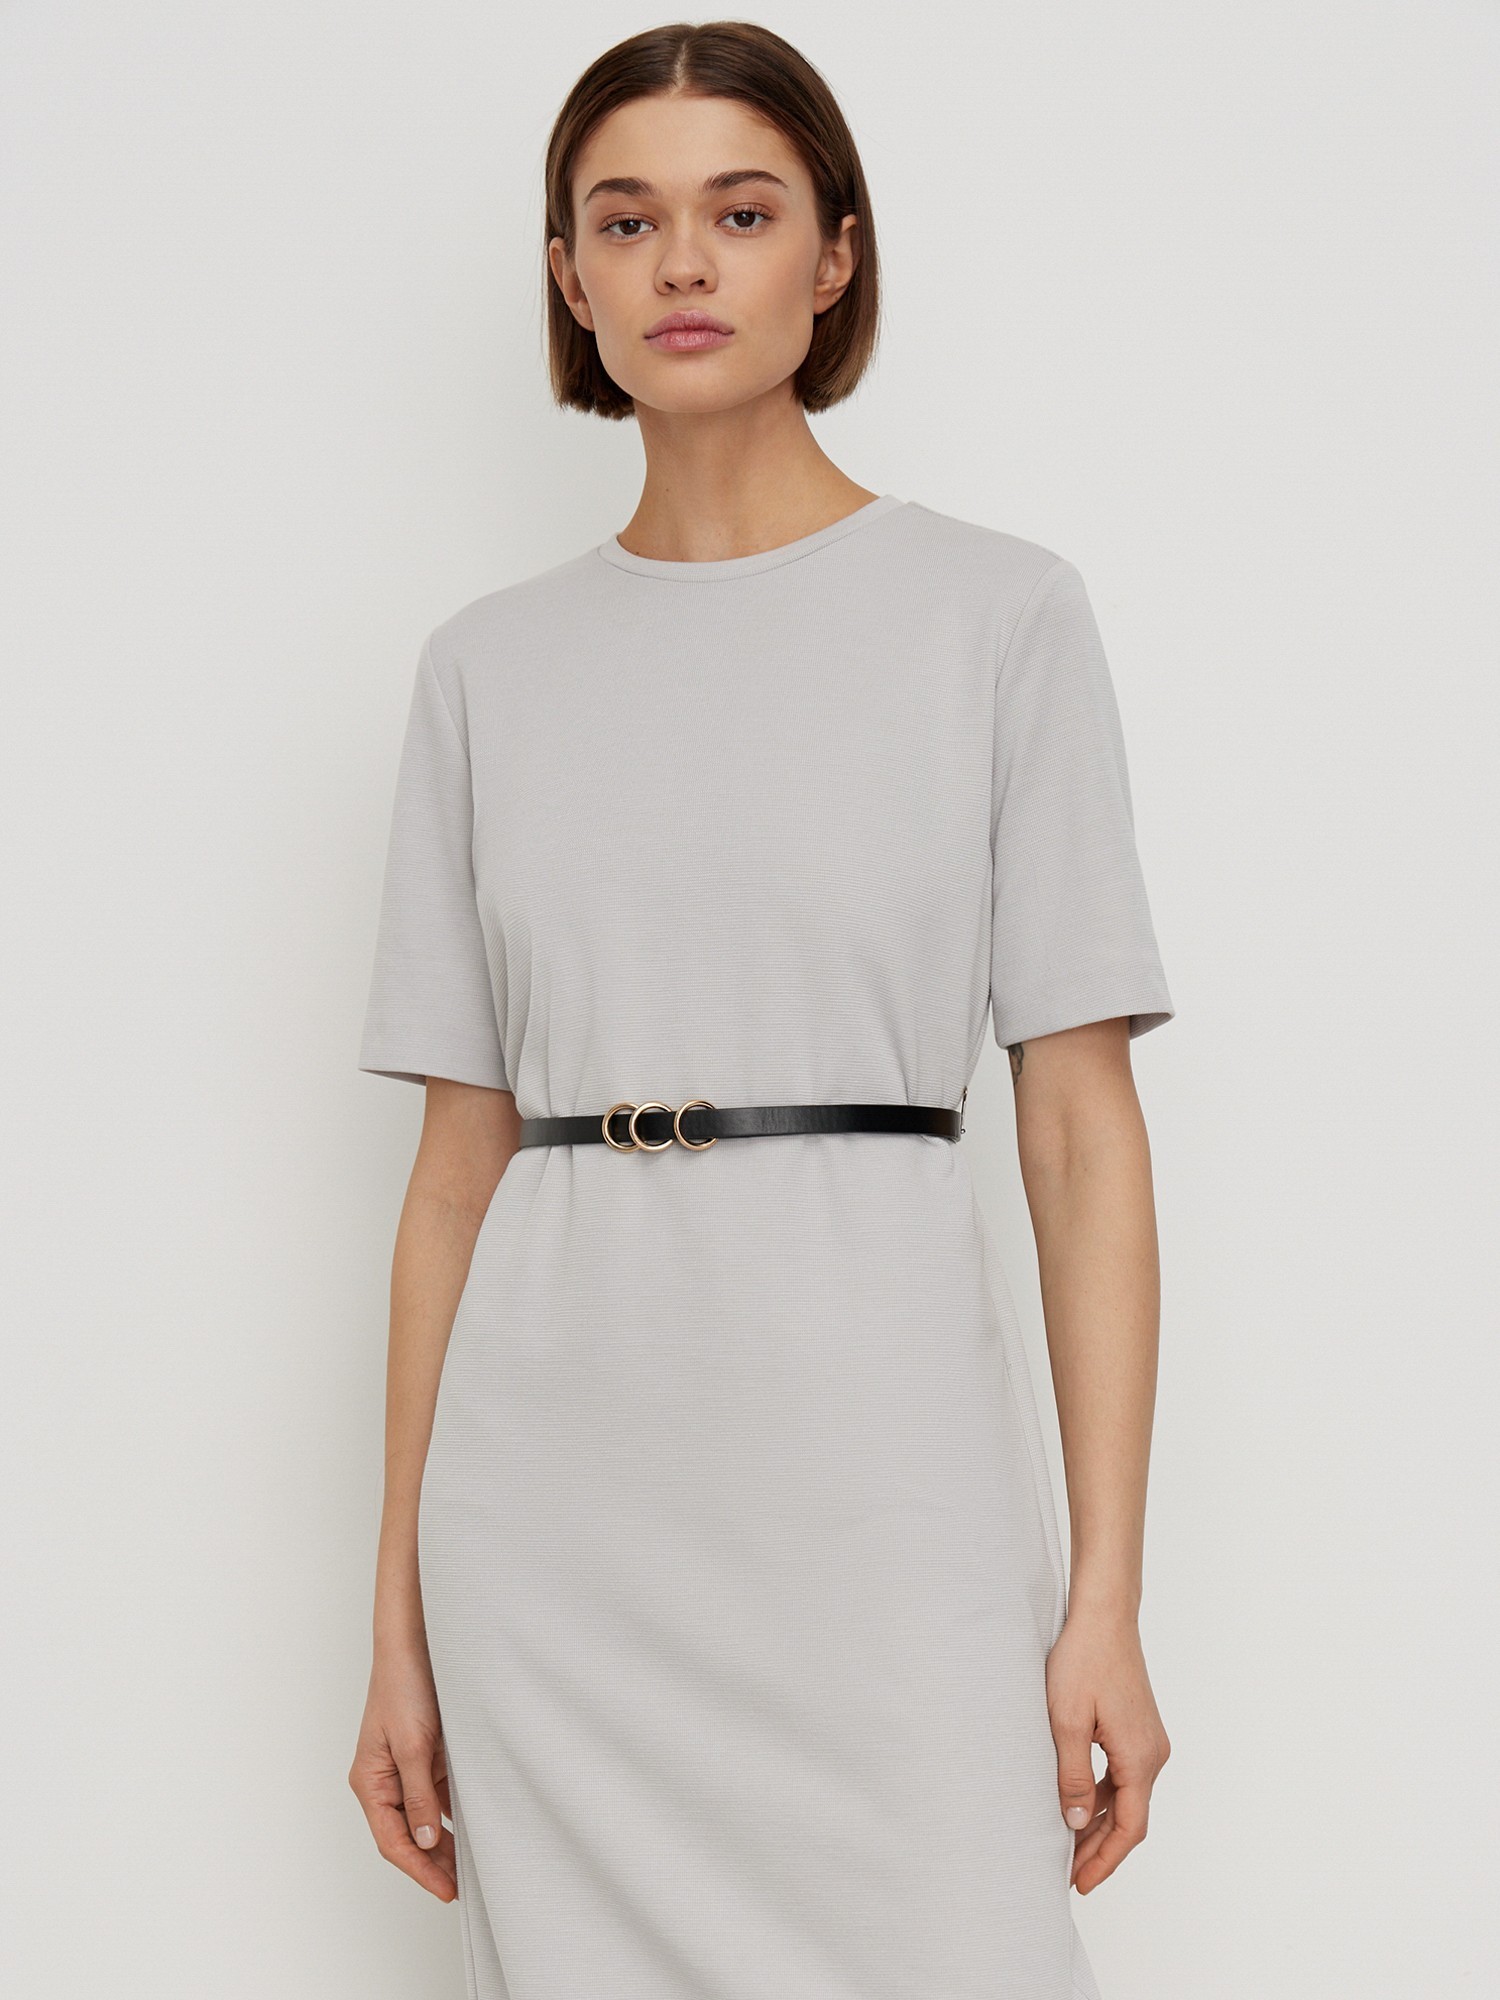 Платье с коротким рукавом трикотажное Elis DR0496K, цвет серый, размер 48 - фото 2